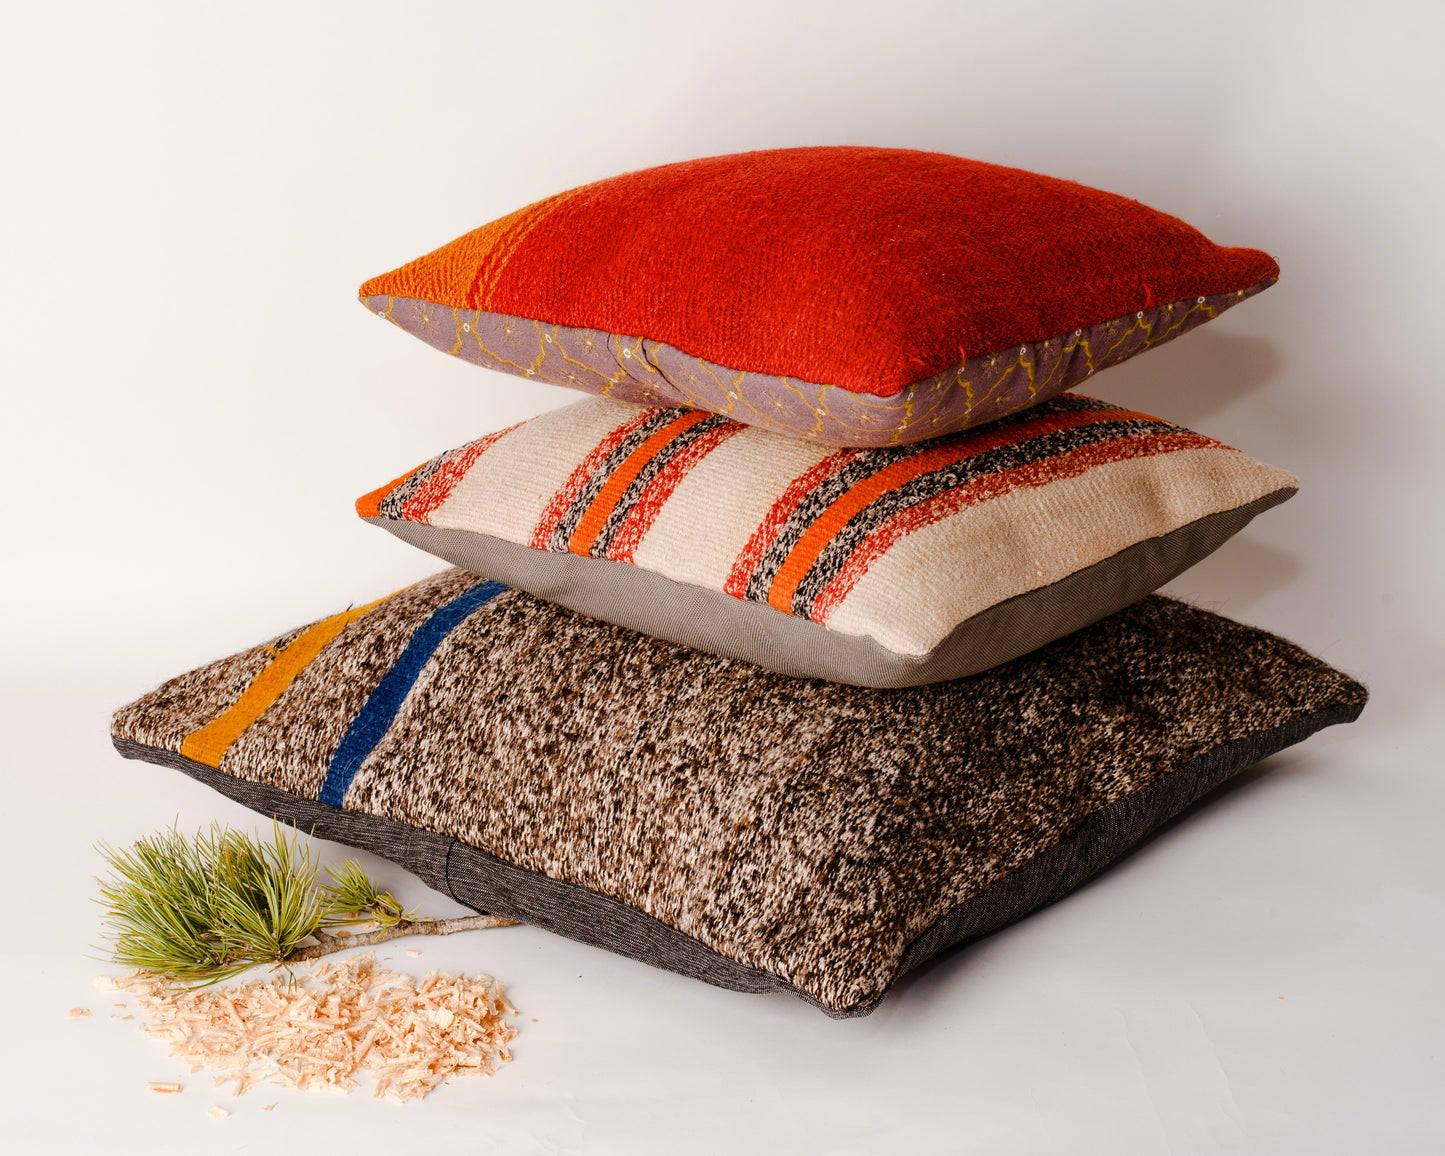 Cuscino in lana realizzato su telaio a mano con fiocchi di cirmolo